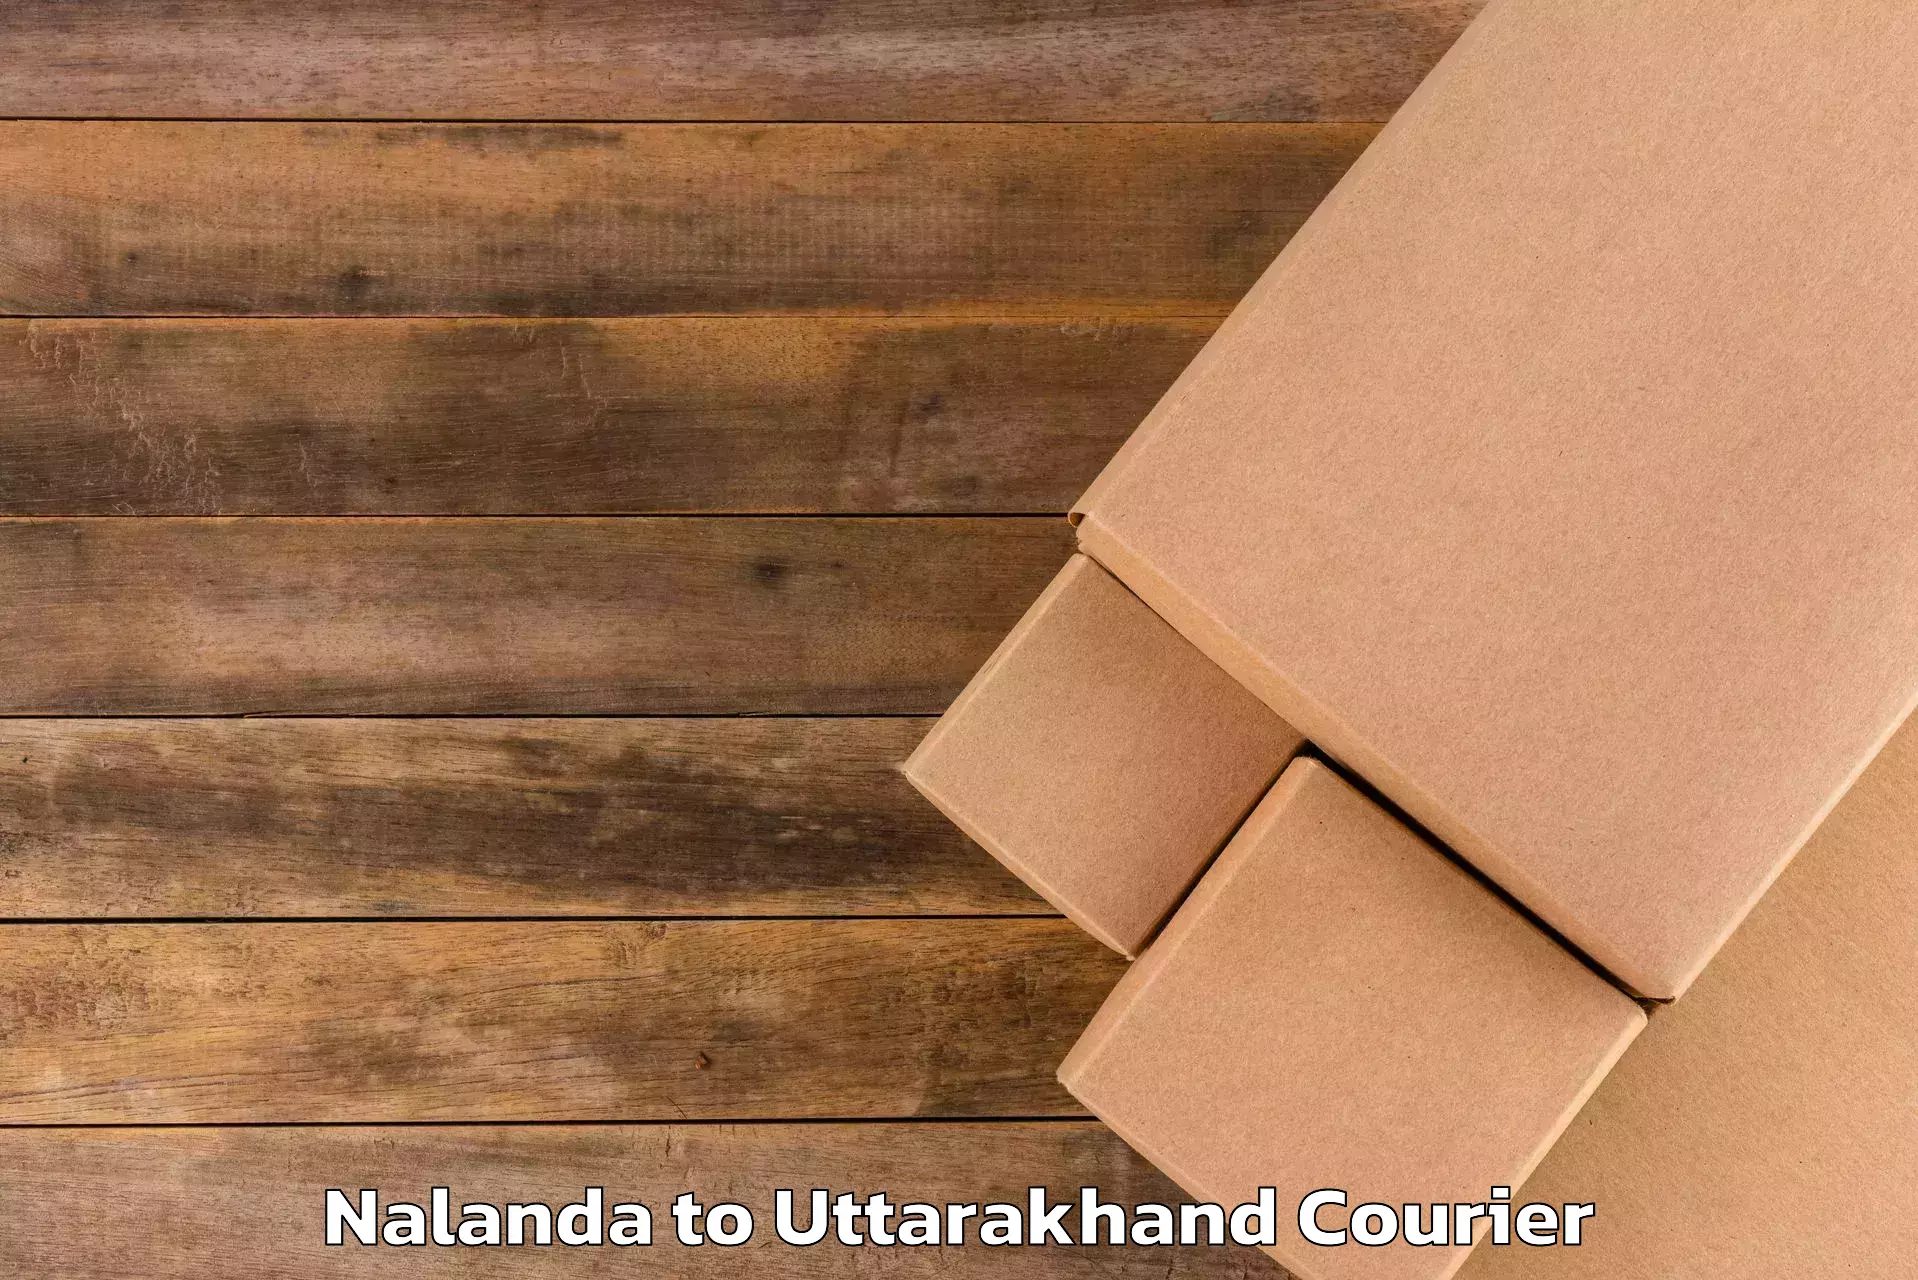 Luggage delivery app Nalanda to Uttarakhand